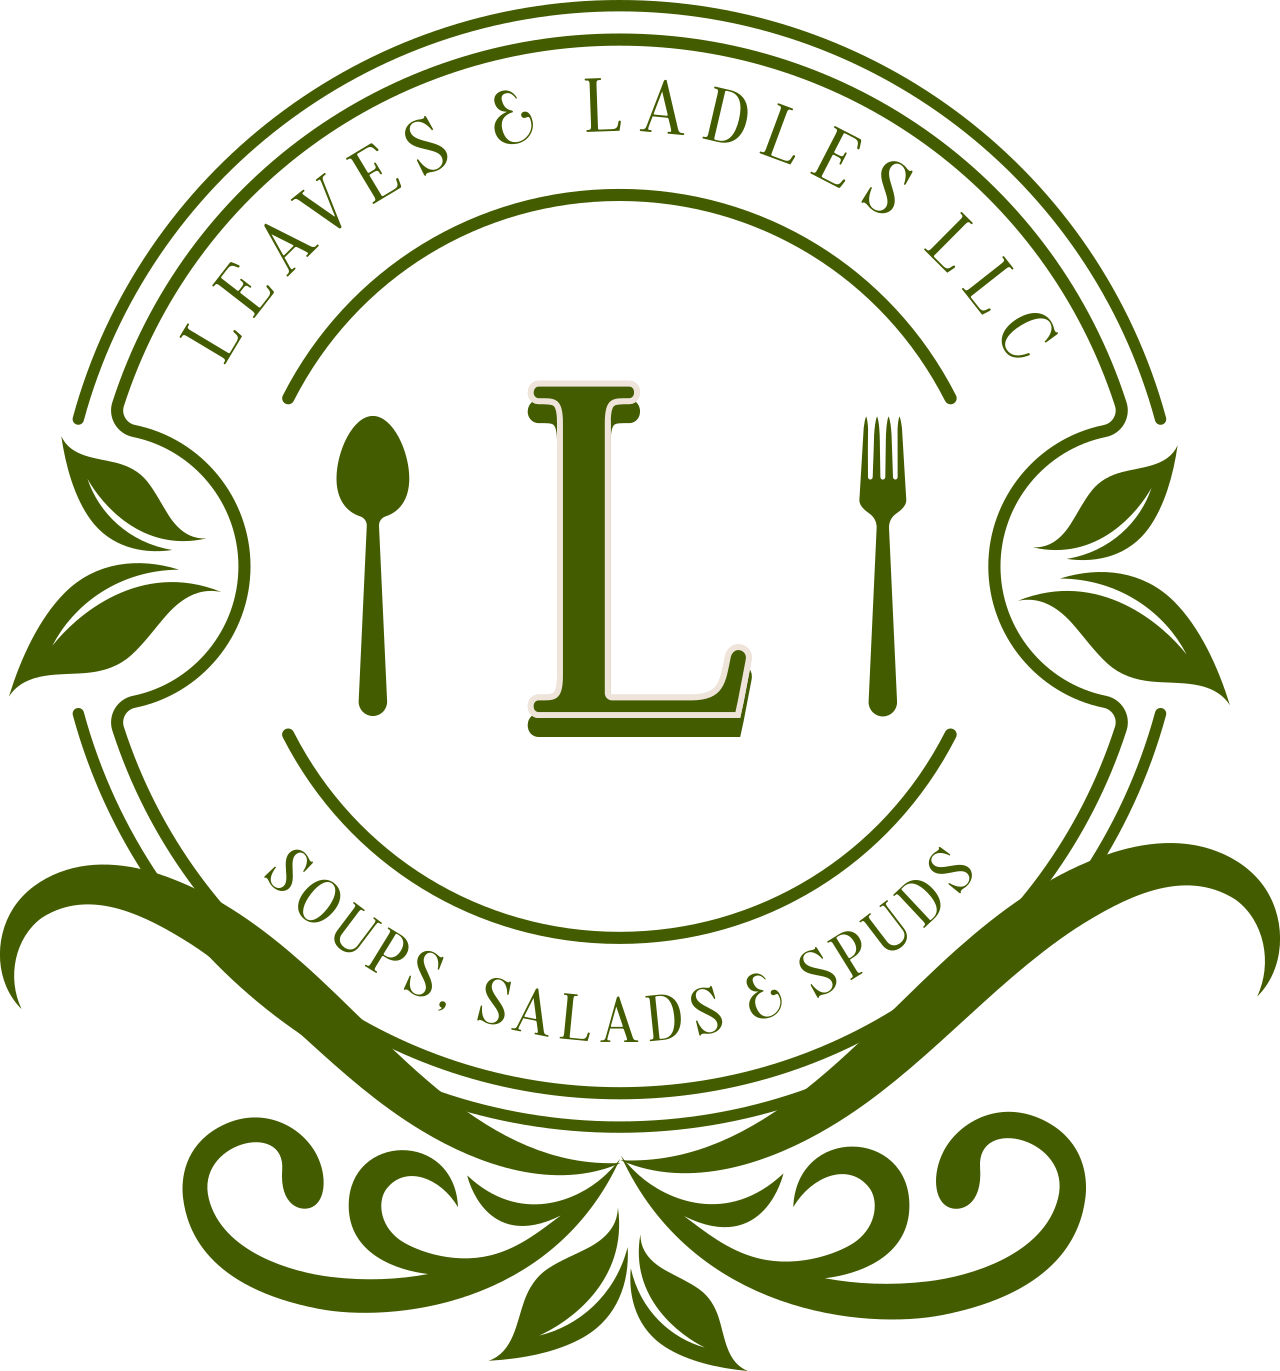 Leaves & Ladles LLC's logo